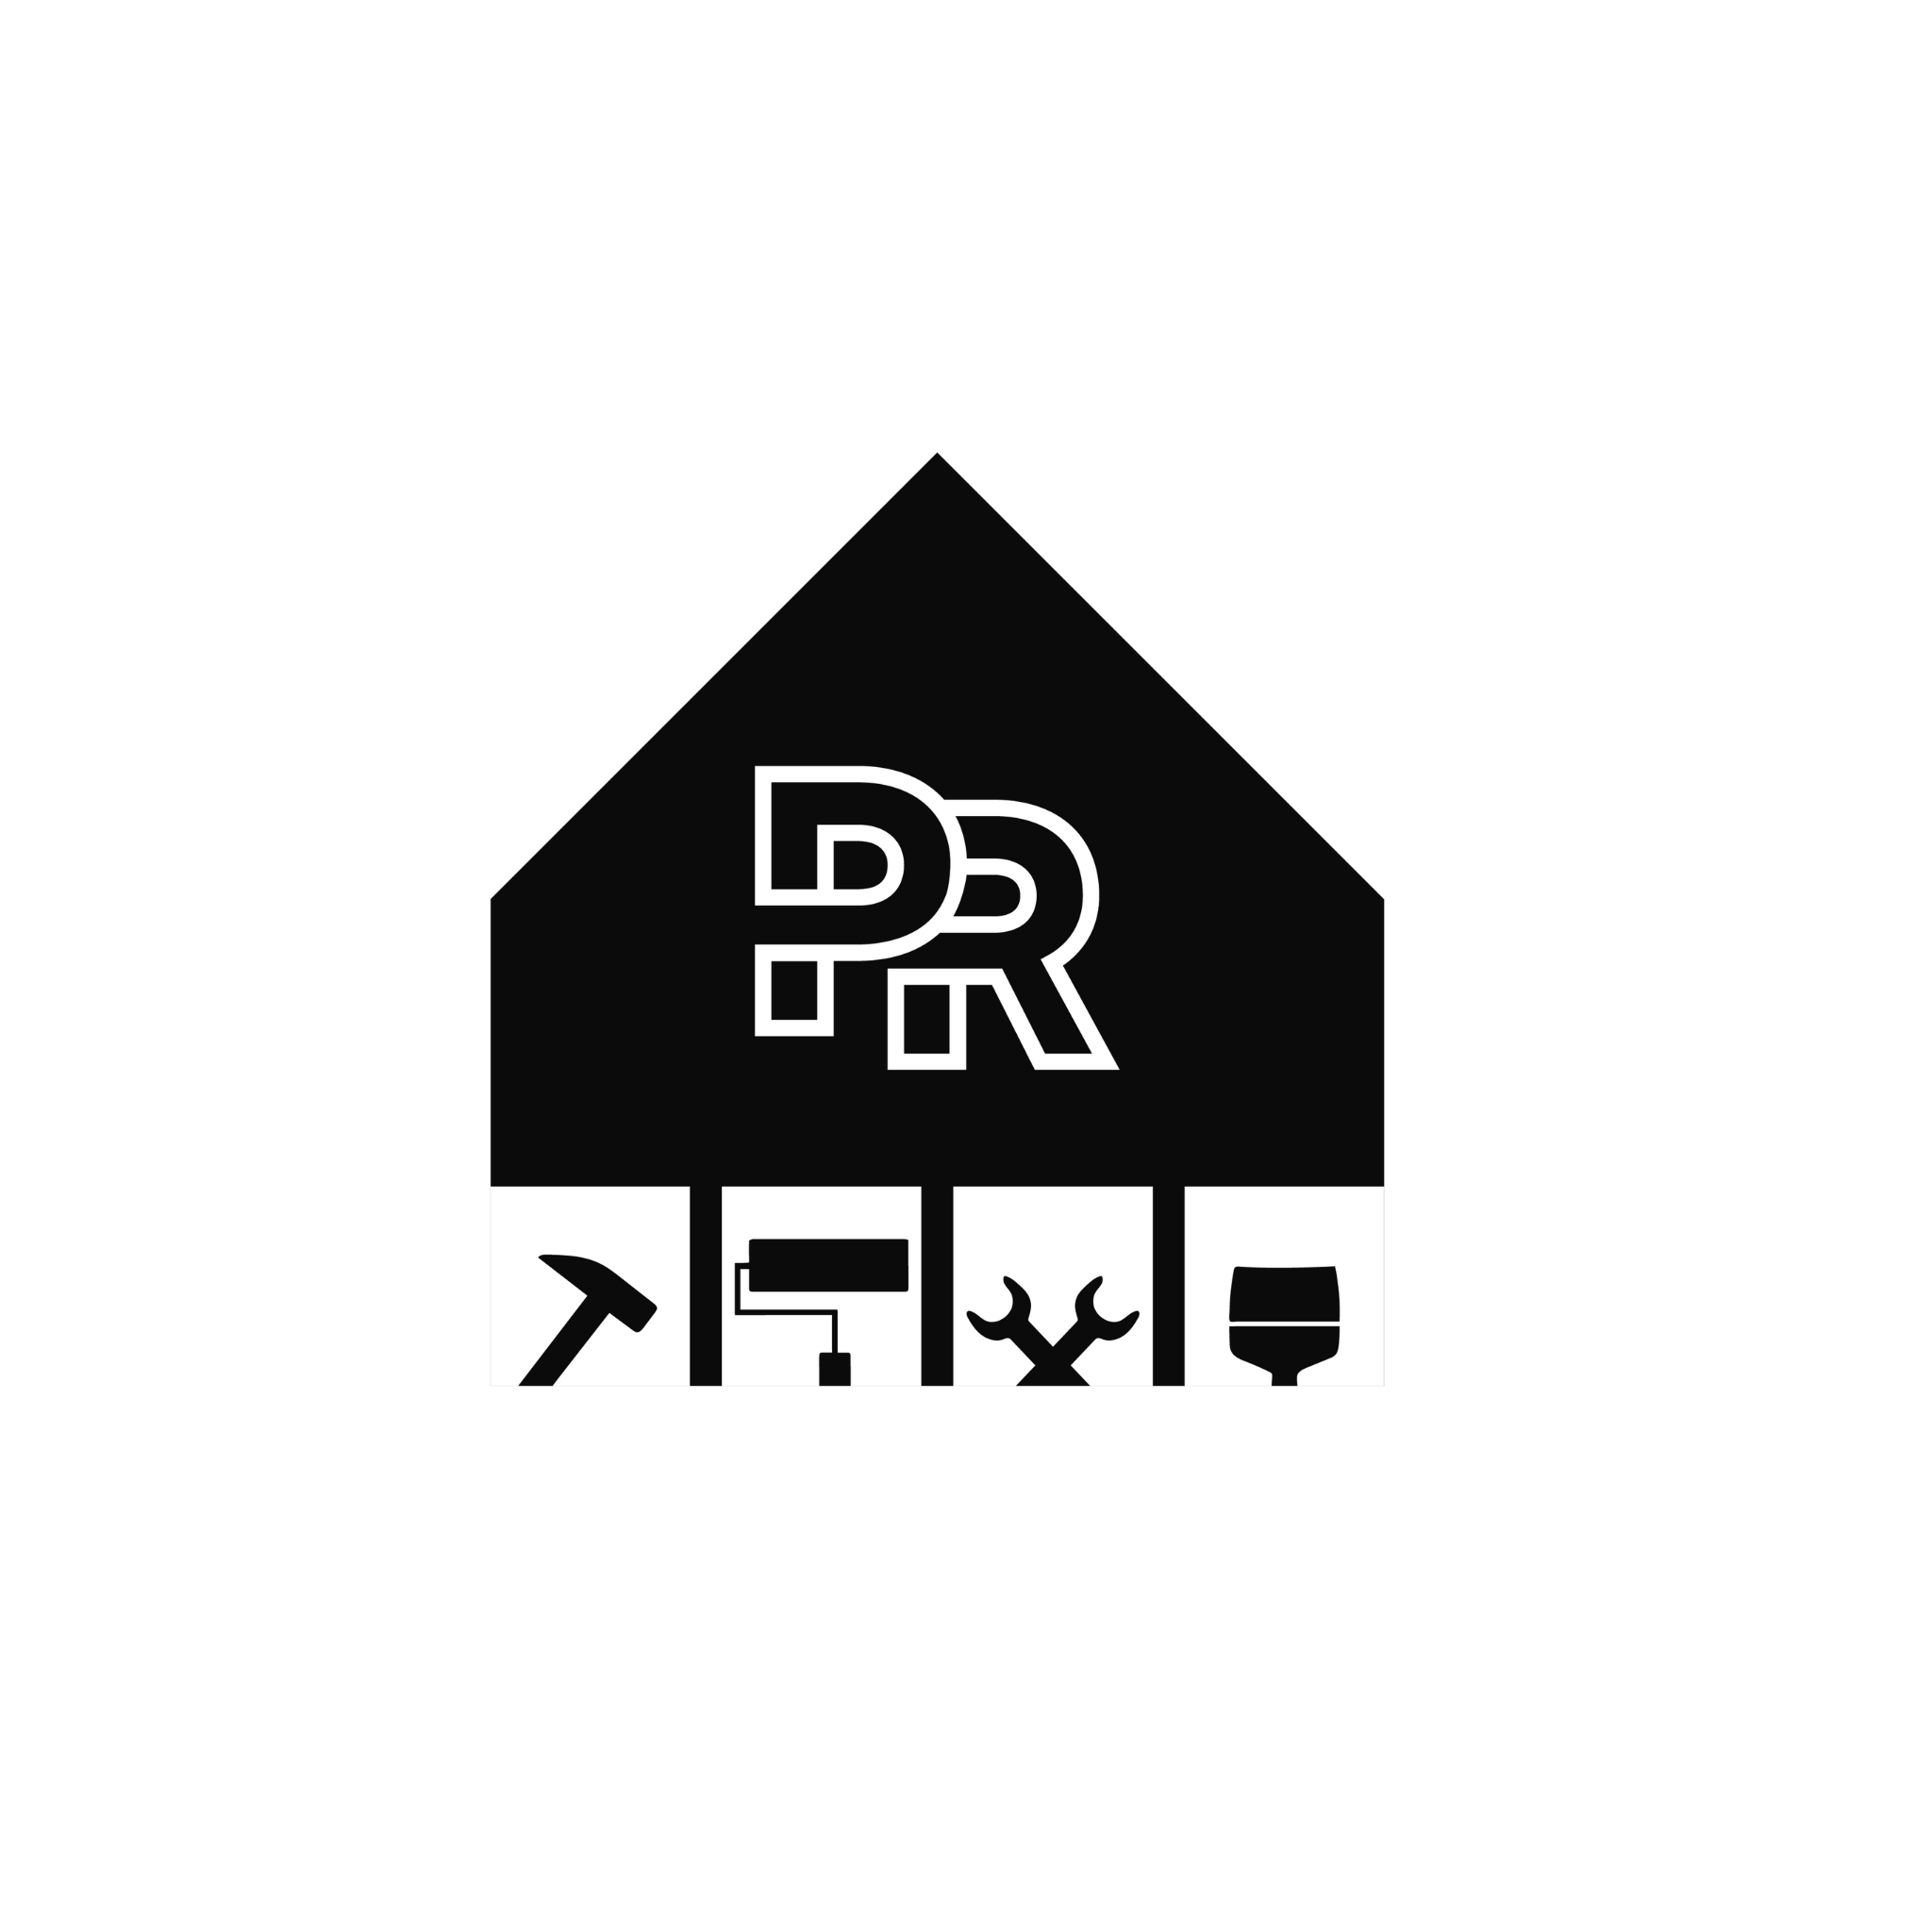 Company logo of Persistent Renovations LTD